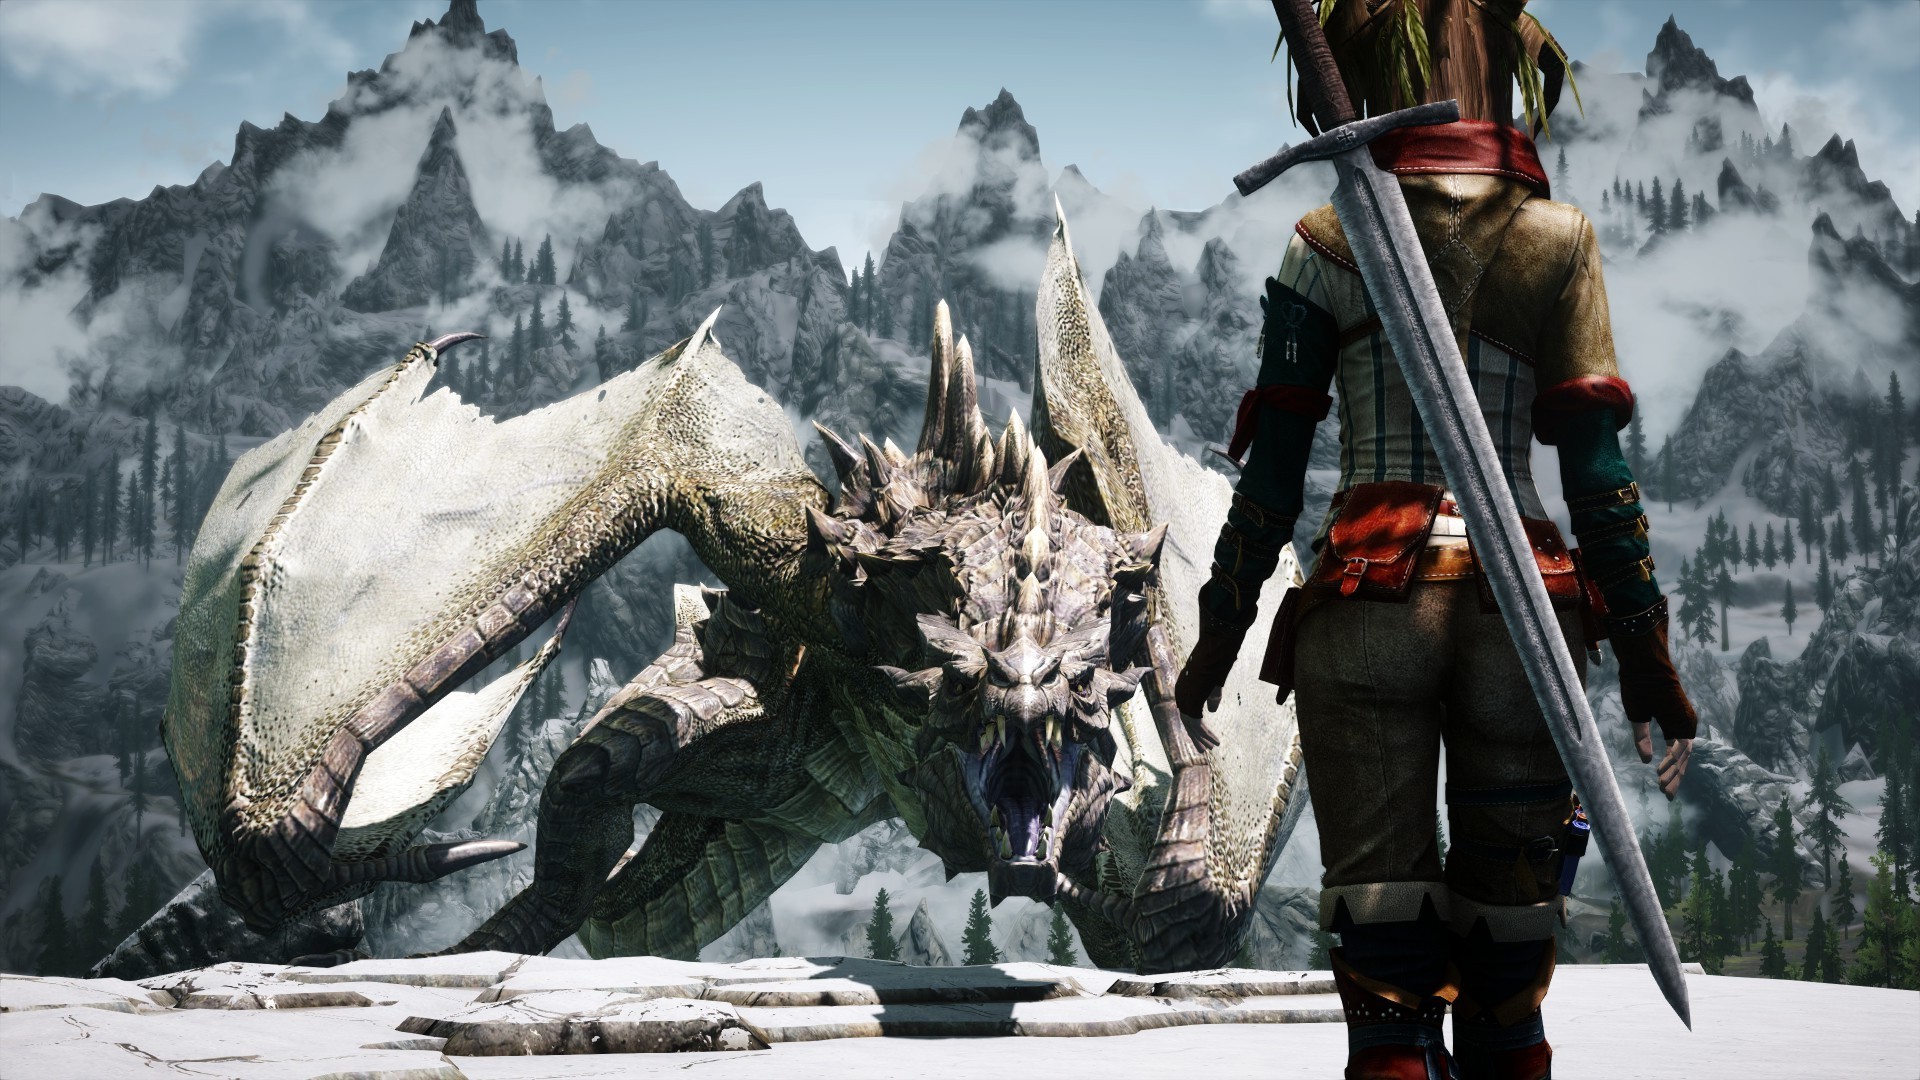 The Elder Scrolls V Skyrim Girl Vs Dragon Wallpaper Search More High